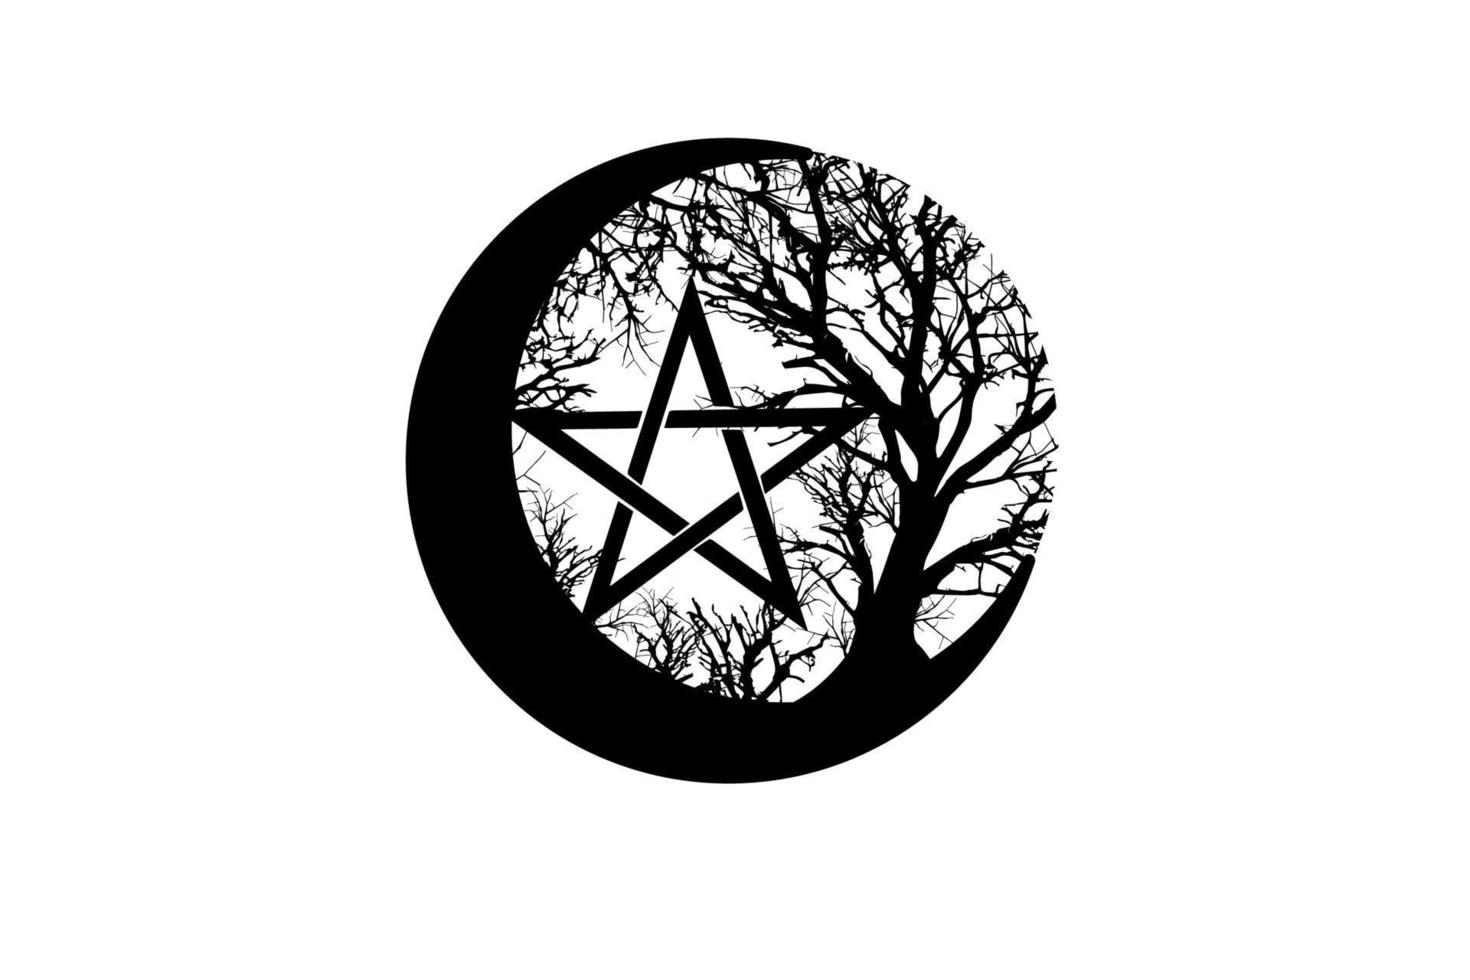 mystieke maan, levensboom en wicca pentacle. heilige geometrie. logo, wassende maan, halve maan heidense Wicca godin symbool, energie cirkel, tattoo stijl vector geïsoleerd op een witte achtergrond